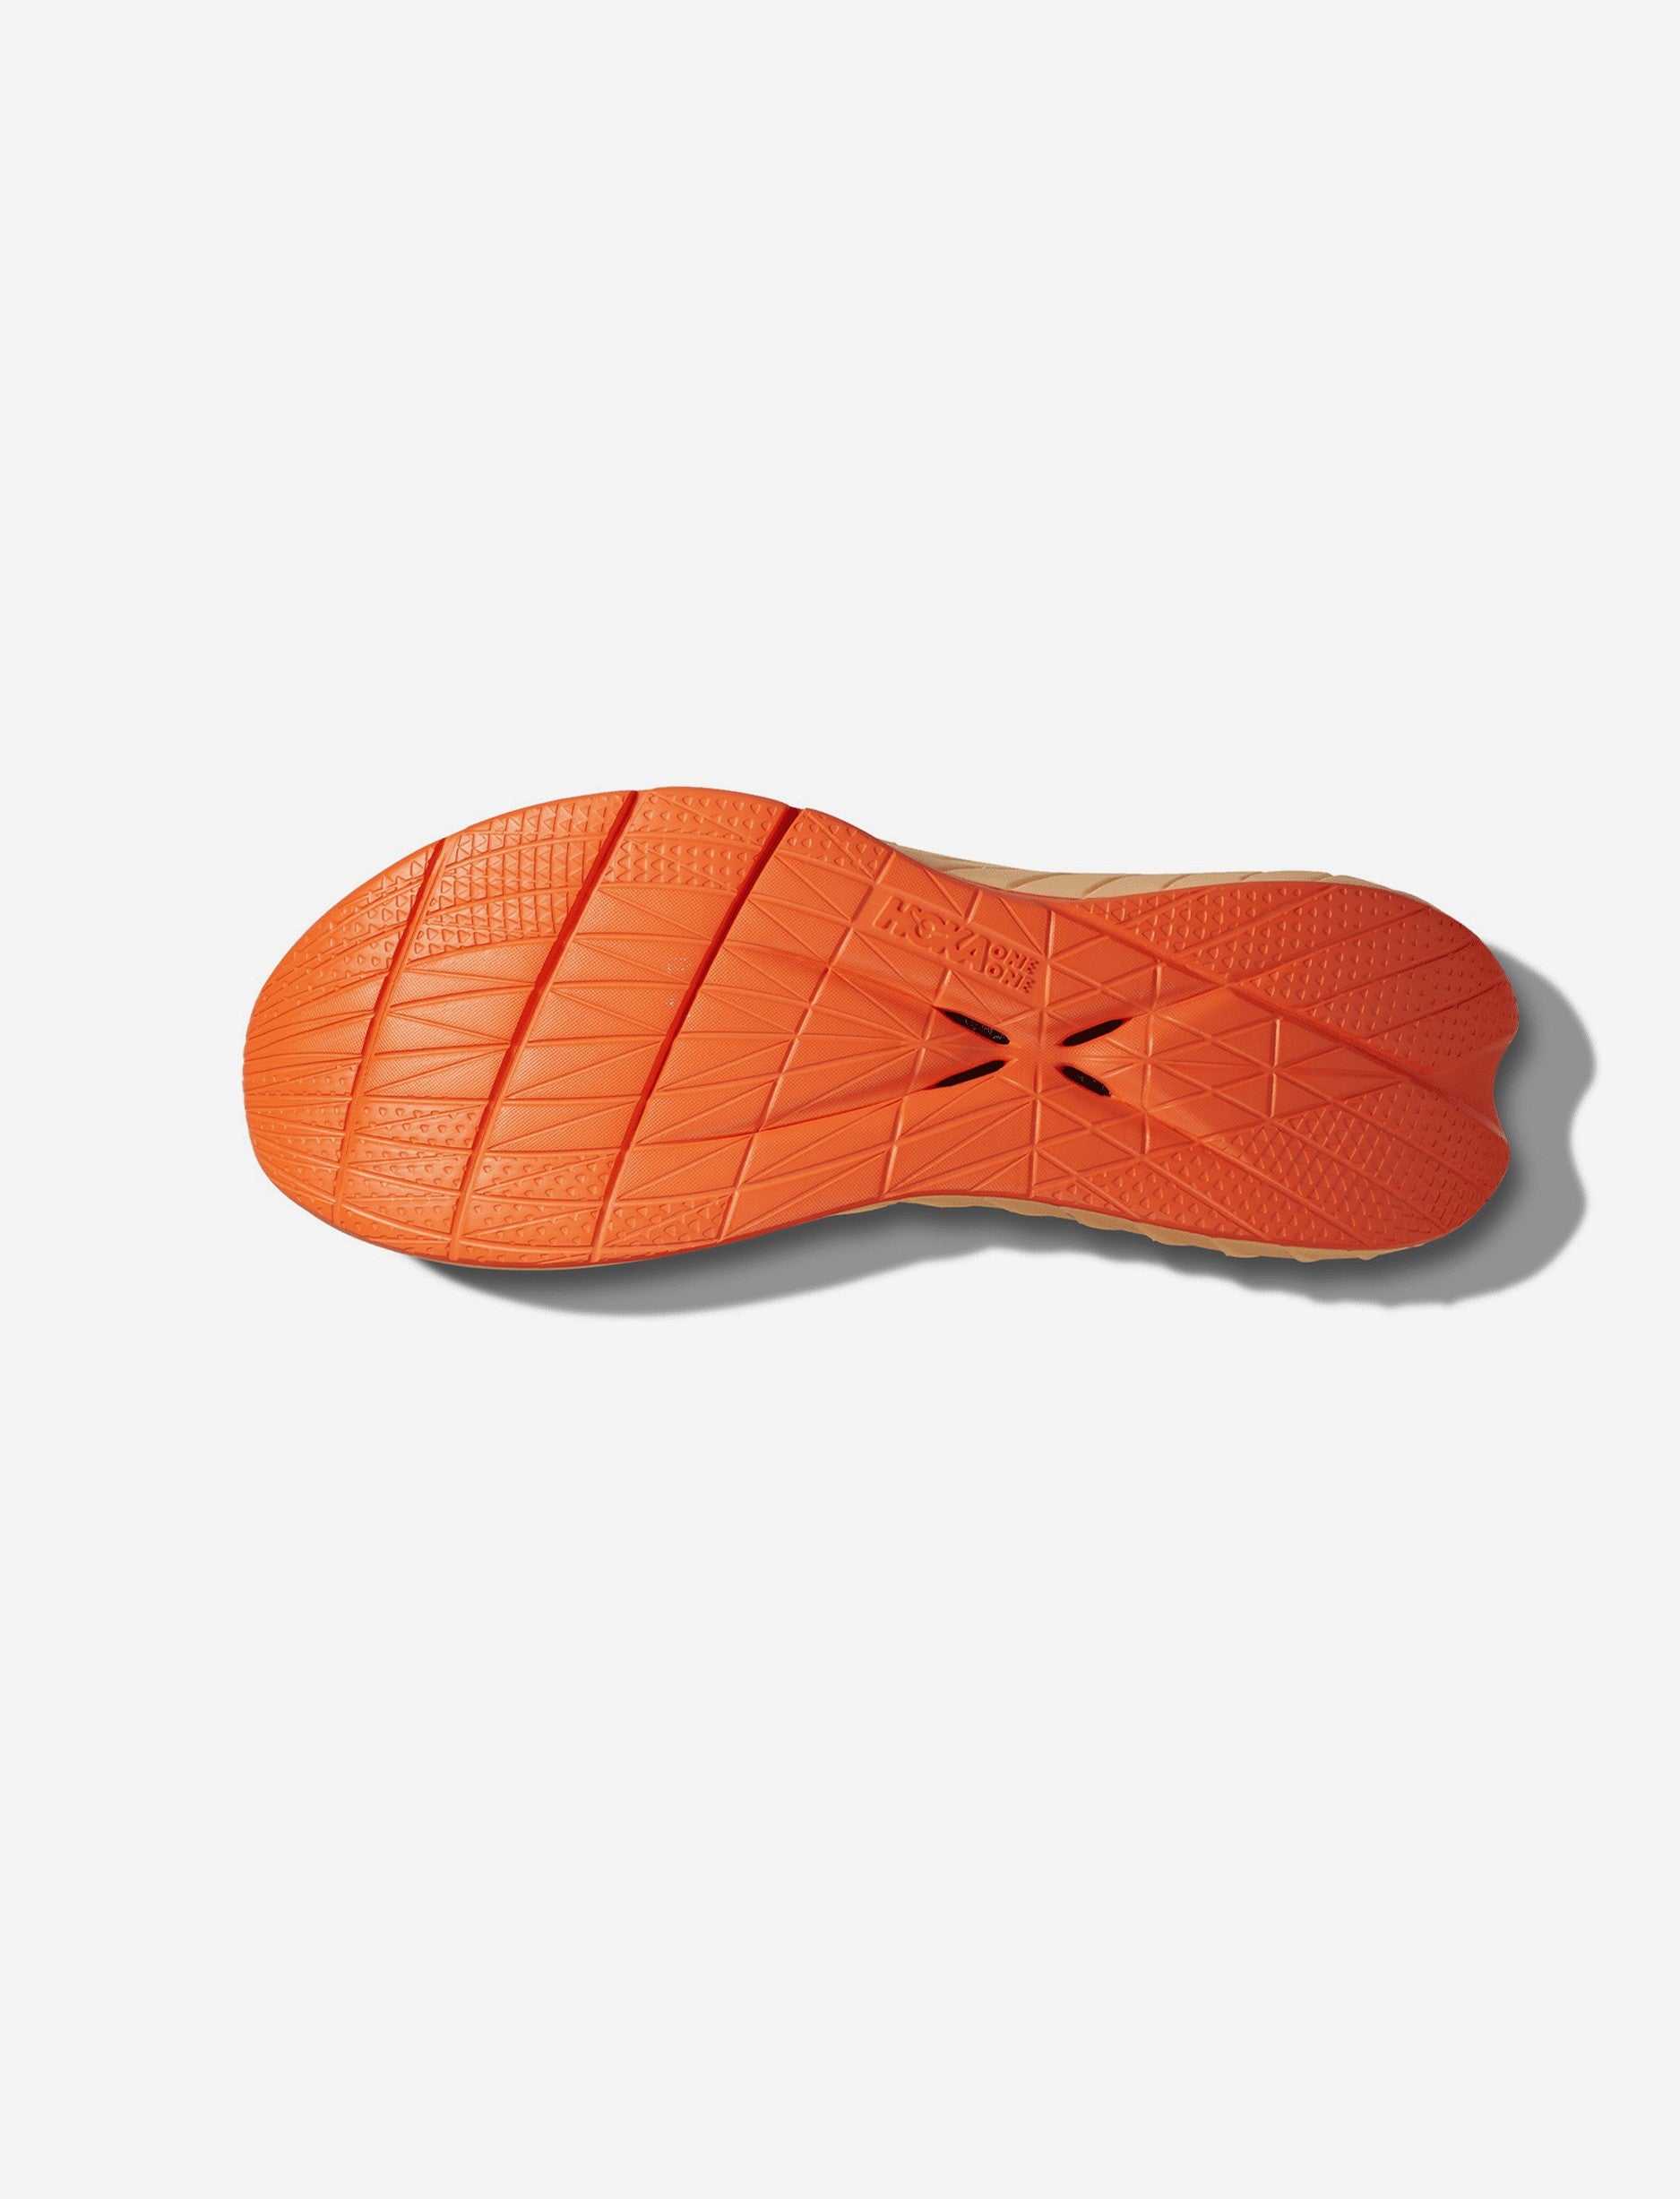 Hoka Carbon X3 - נעלי ספורט הוקה קרבון איקס 3 לגברים